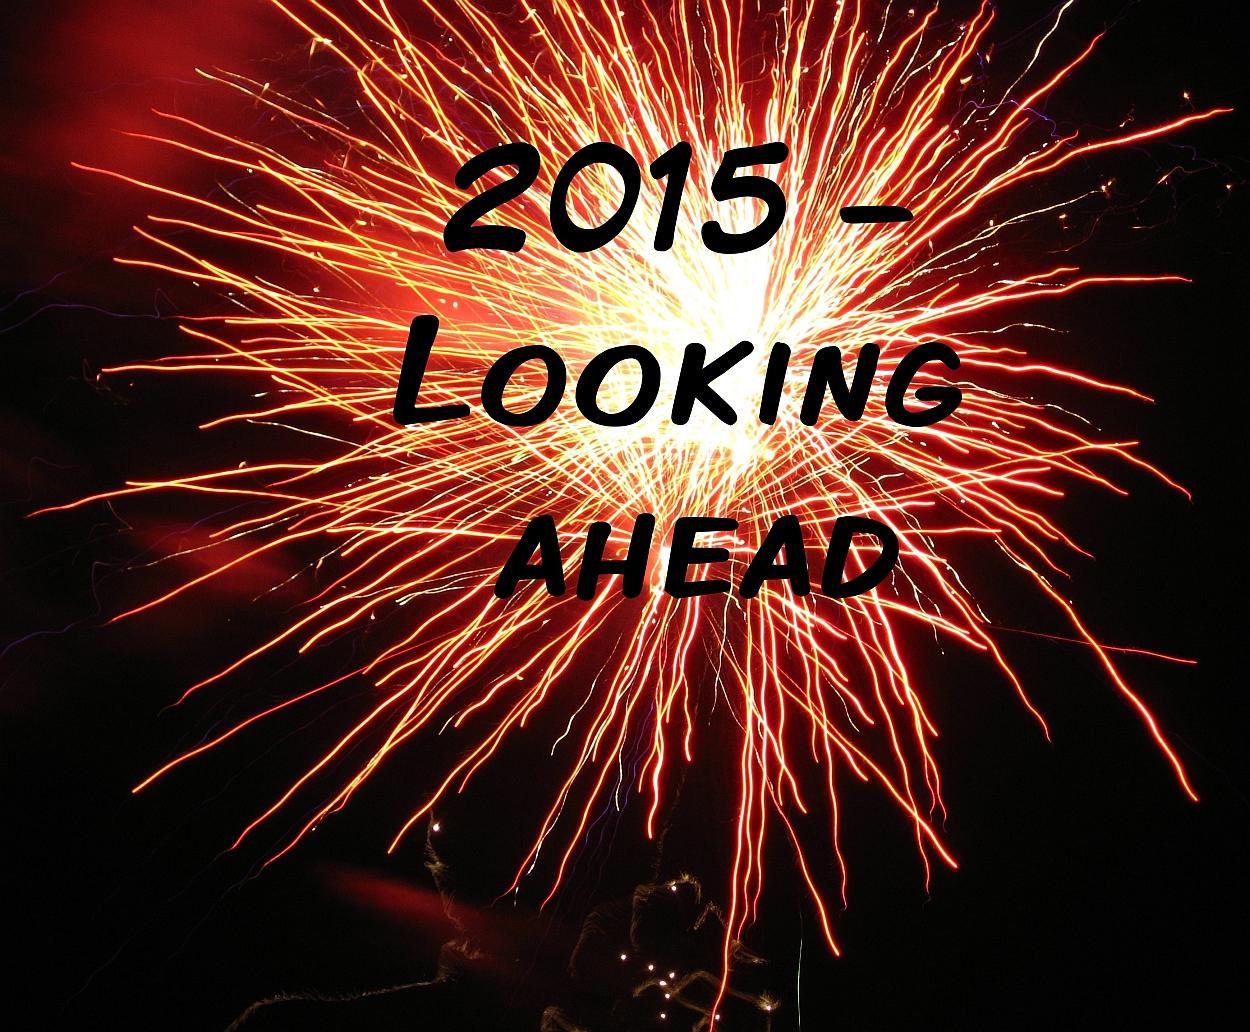 2015 - Looking ahead - Little Hearts, Big Love